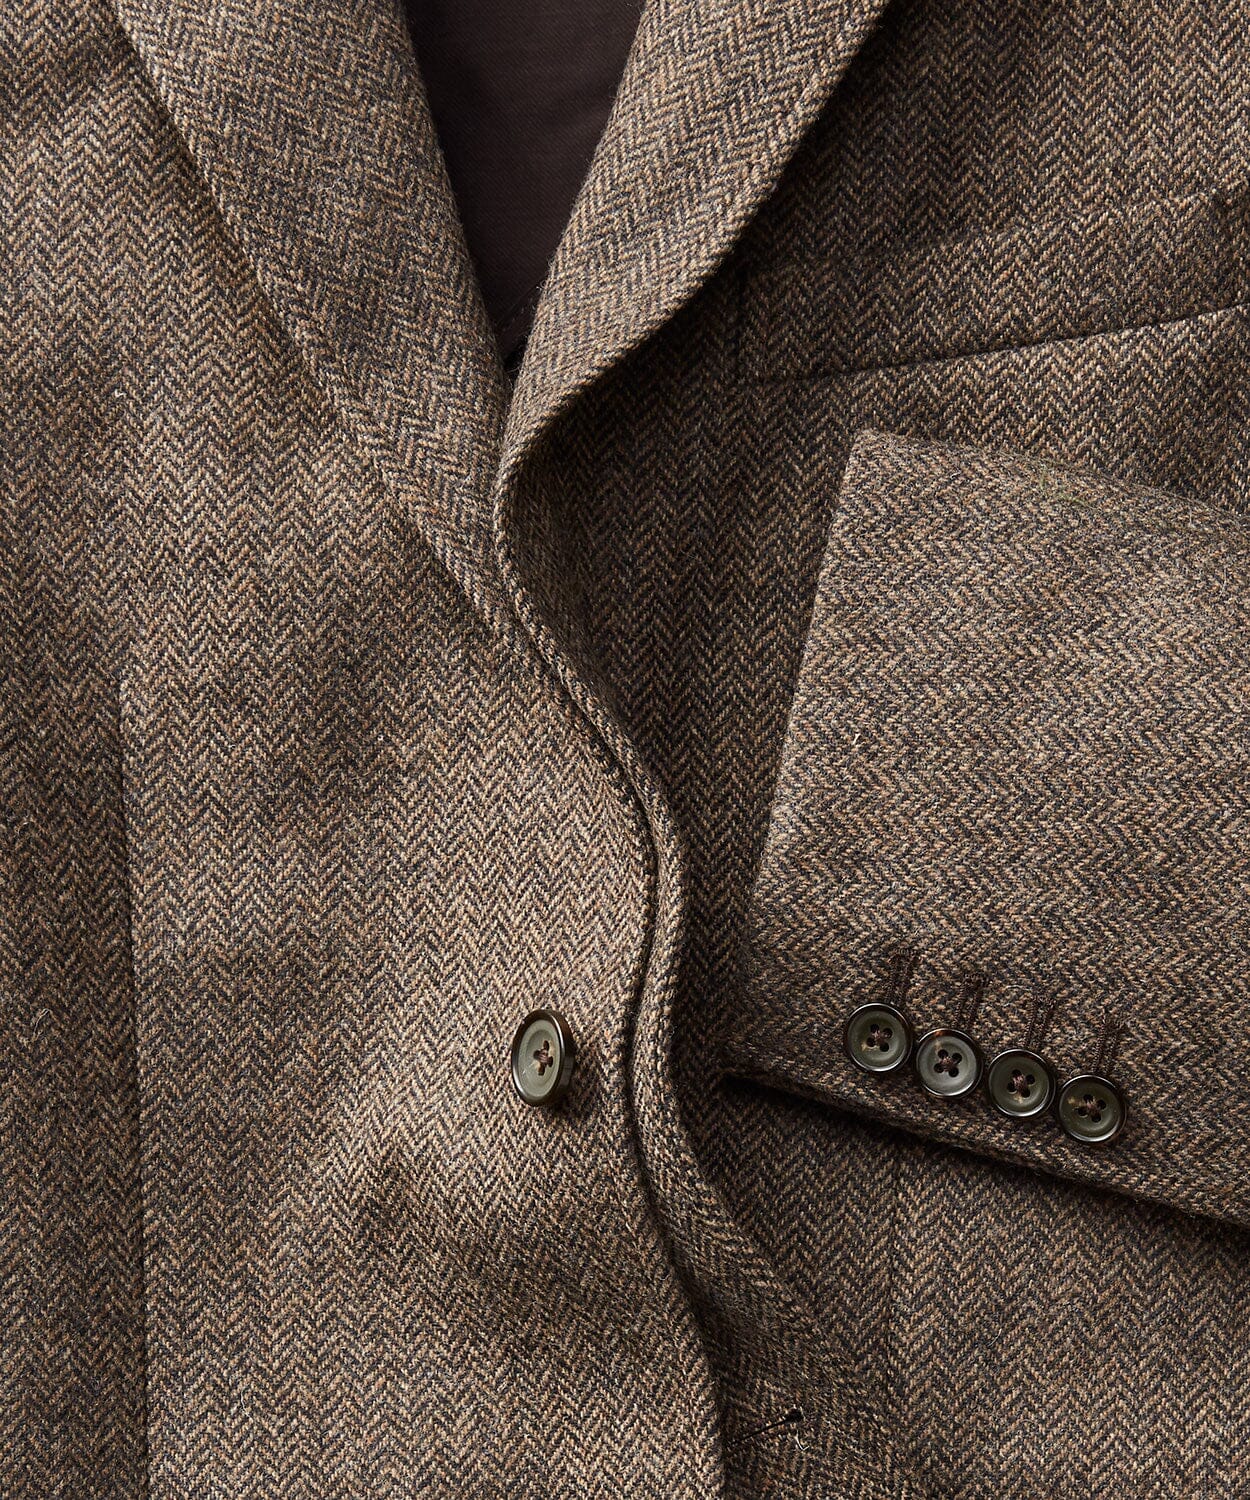 Andover Wool Sport Coat Sport Coats & Blazers OOBE BRAND 